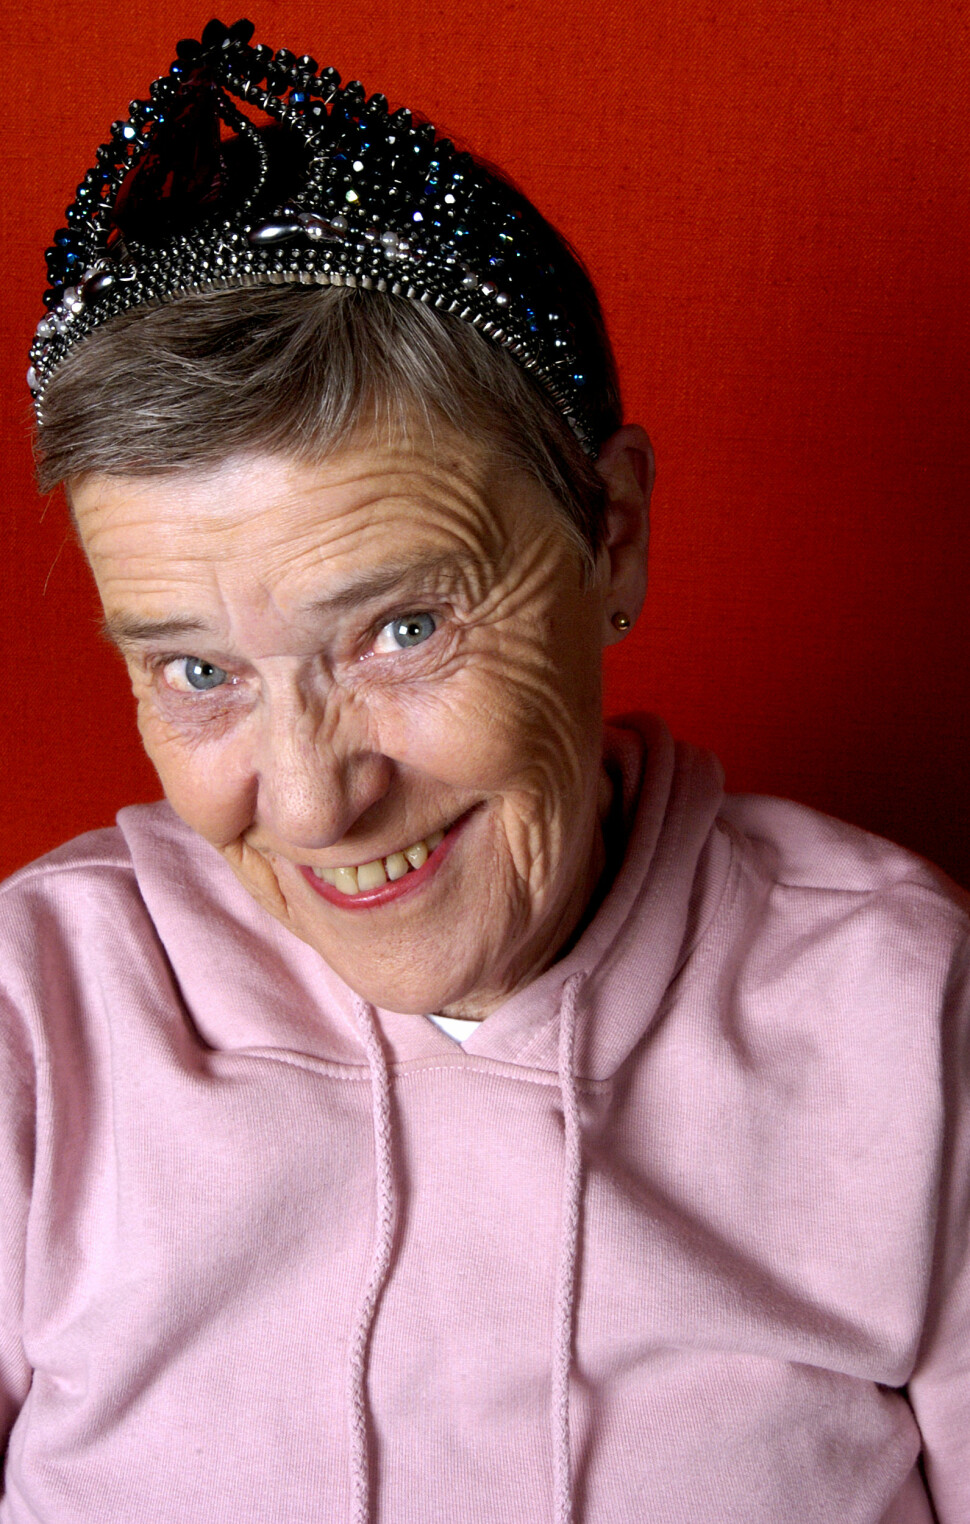 For over 60 år siden Kim Friele satt på en benk utenfor Nasjonalteatret og kikket etter damer med kort hår og buksedresser. Nå er hun Norges mest legendariske homorettighetsforkjemper.